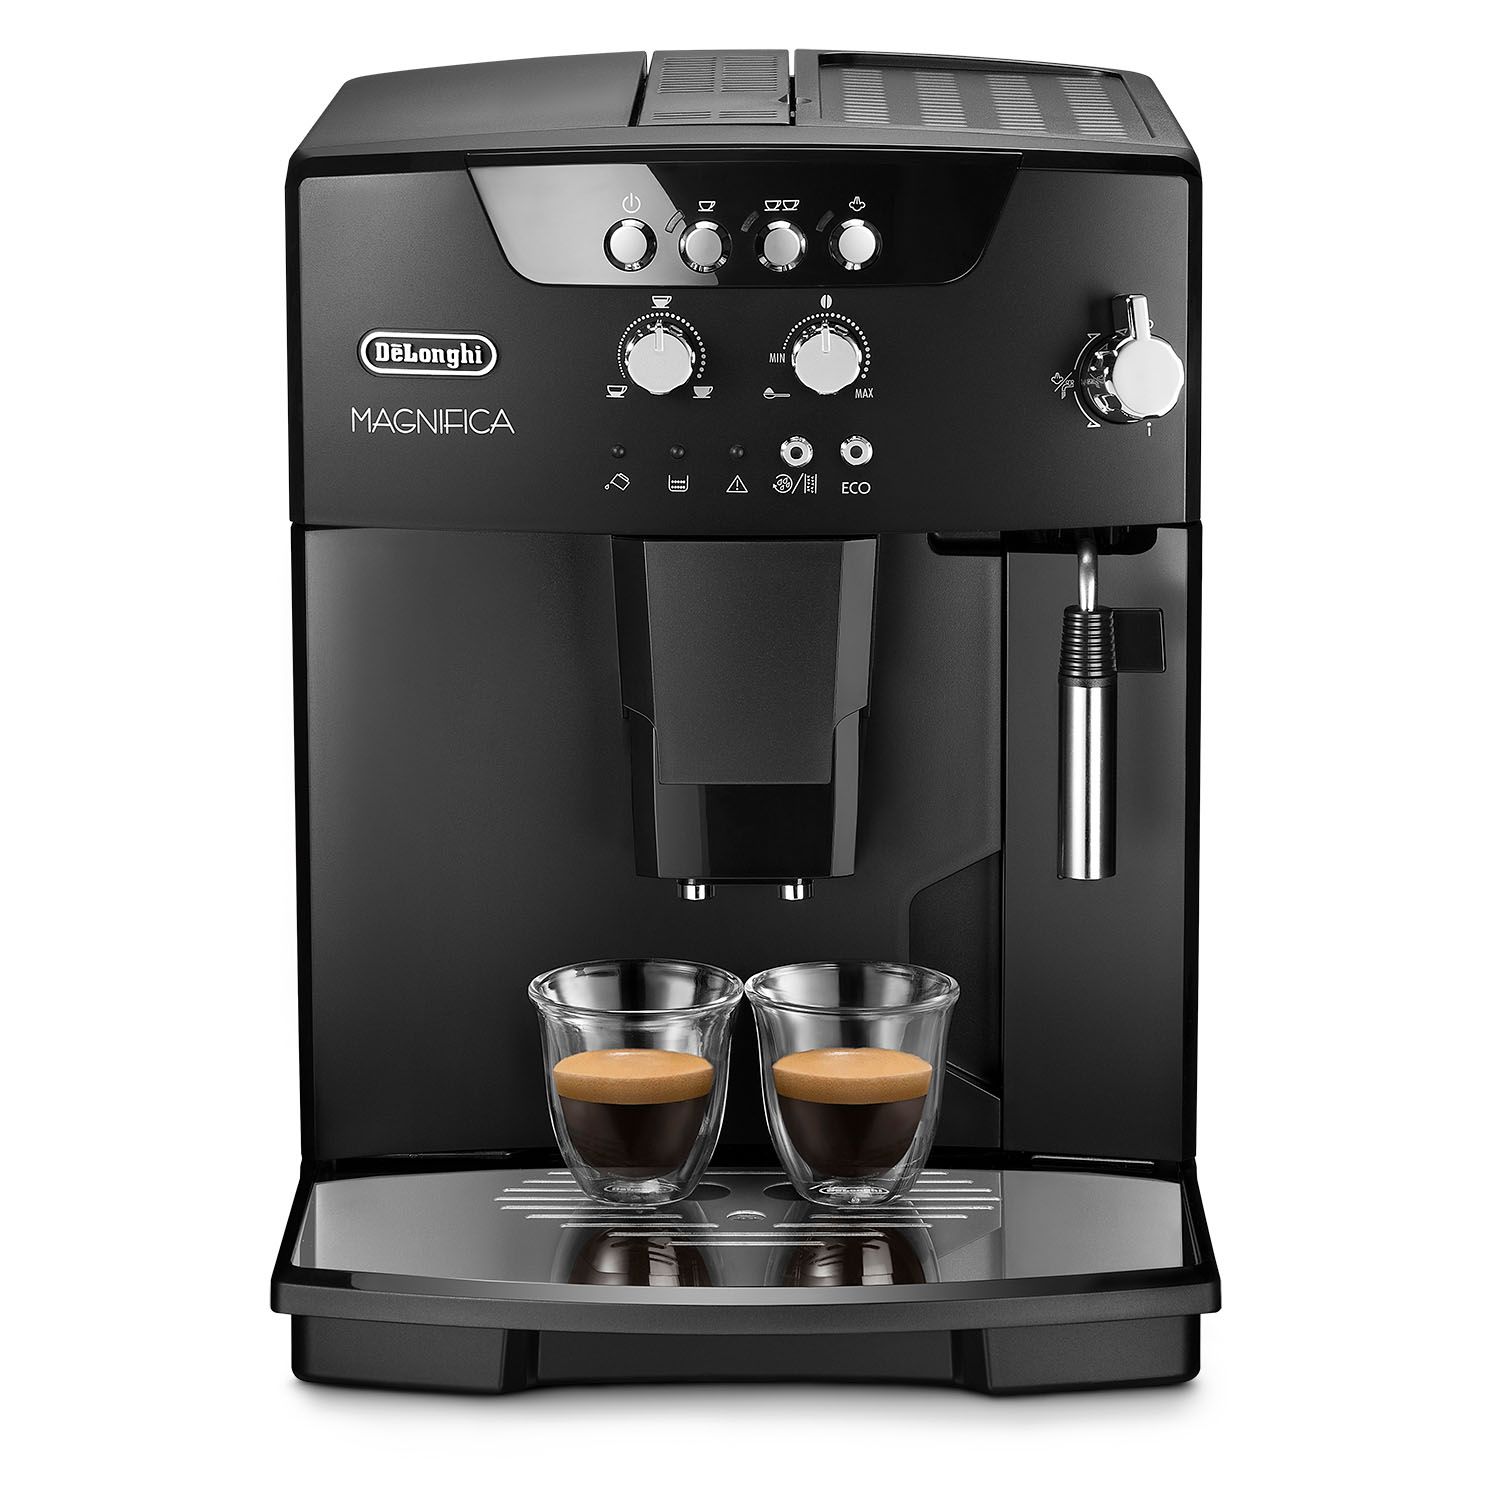 De’Longhi ESAM04110B Magnifica Fully Automatic Espresso and Cappuccino Machine